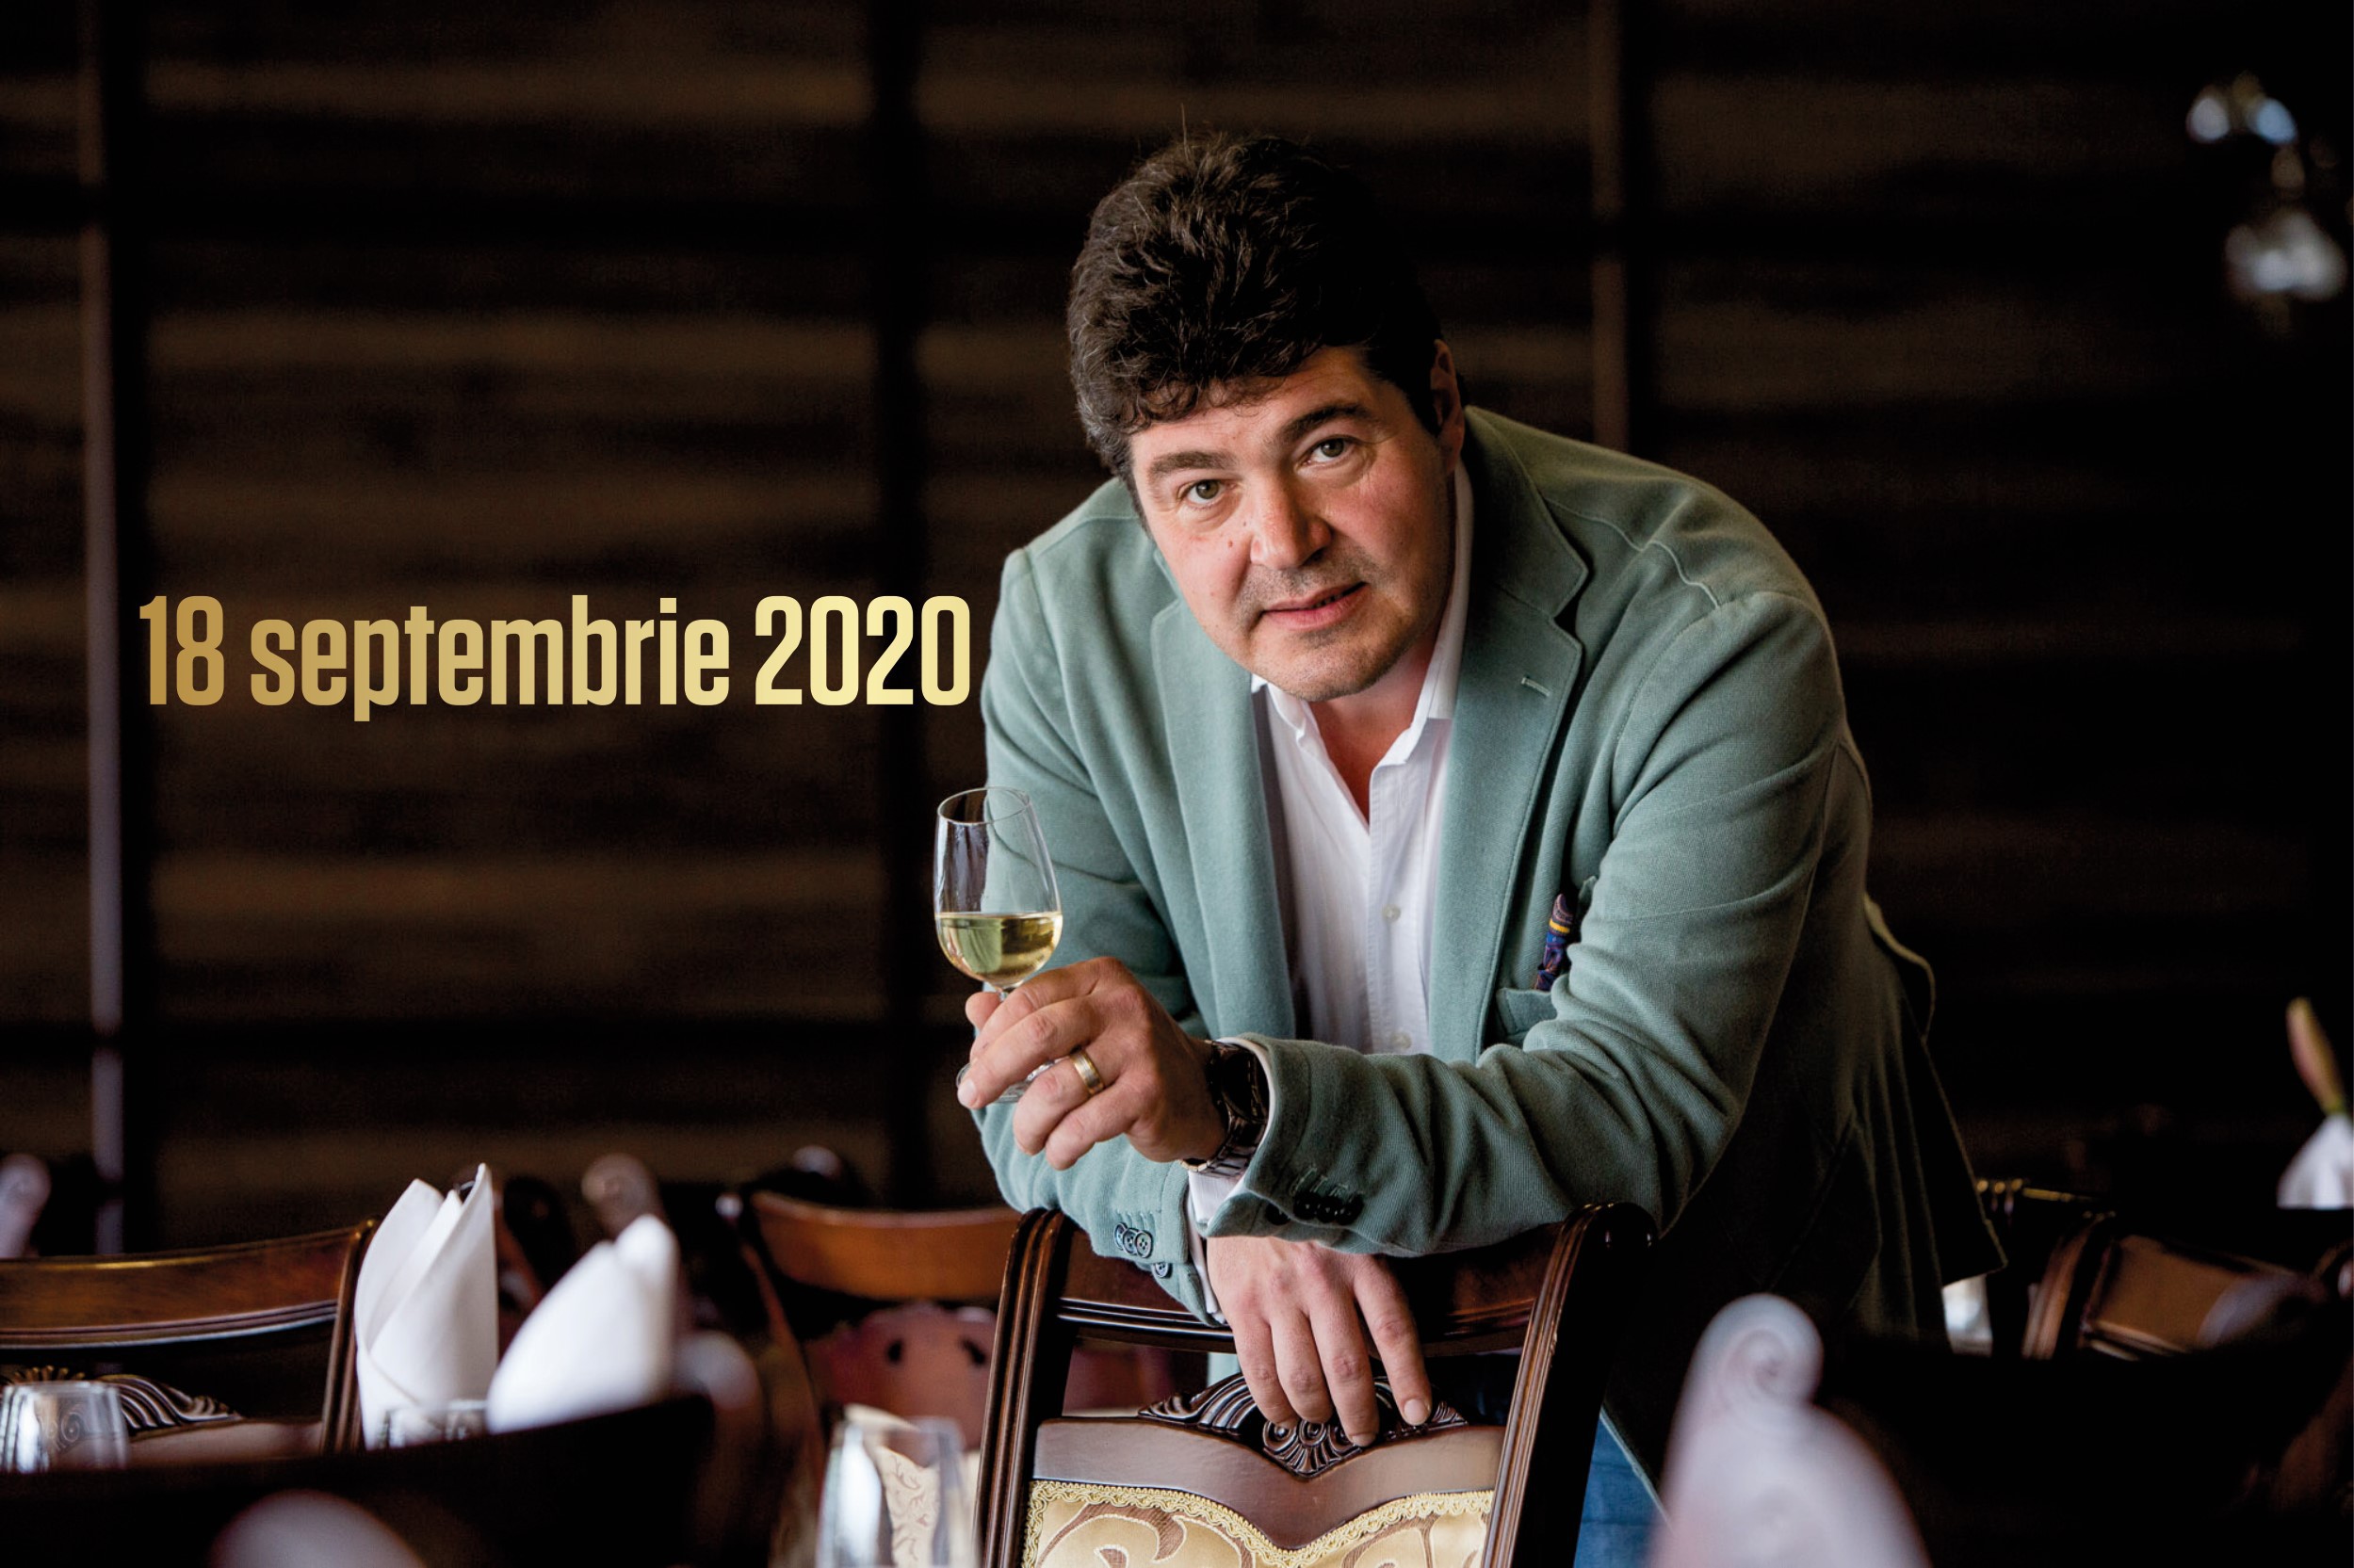 18 - 20 septembrie 2020 – Ce vinuri bem în acest weekend, 3 vinuri pentru 3 seri. Recomandările lui Cătălin Păduraru, Preşedintele VINARIUM International Wine Contest